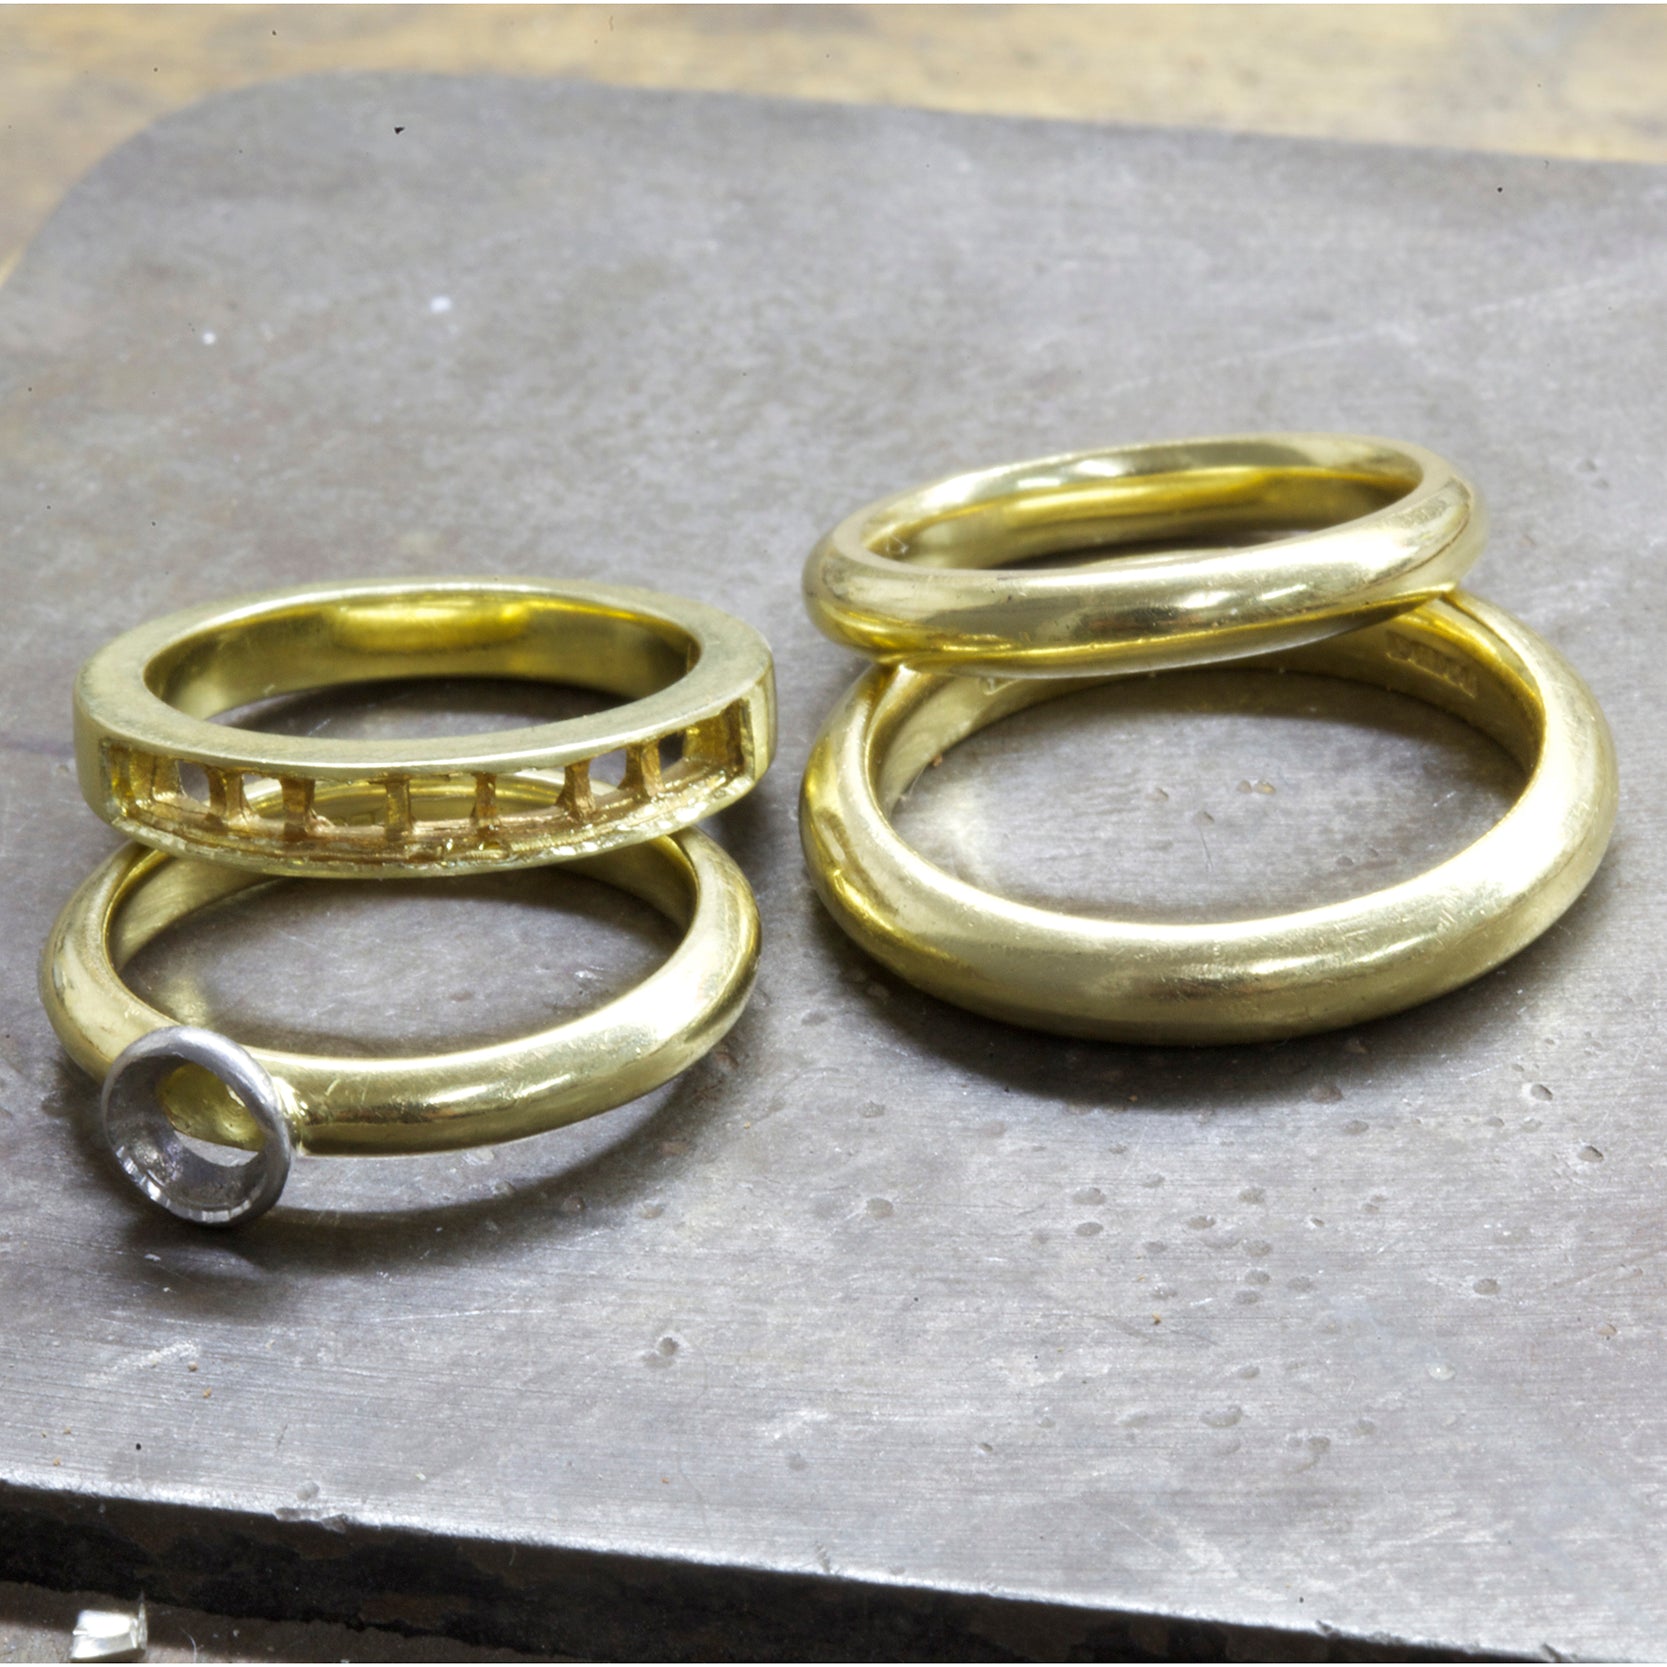 Ghazala's rings before remodelling